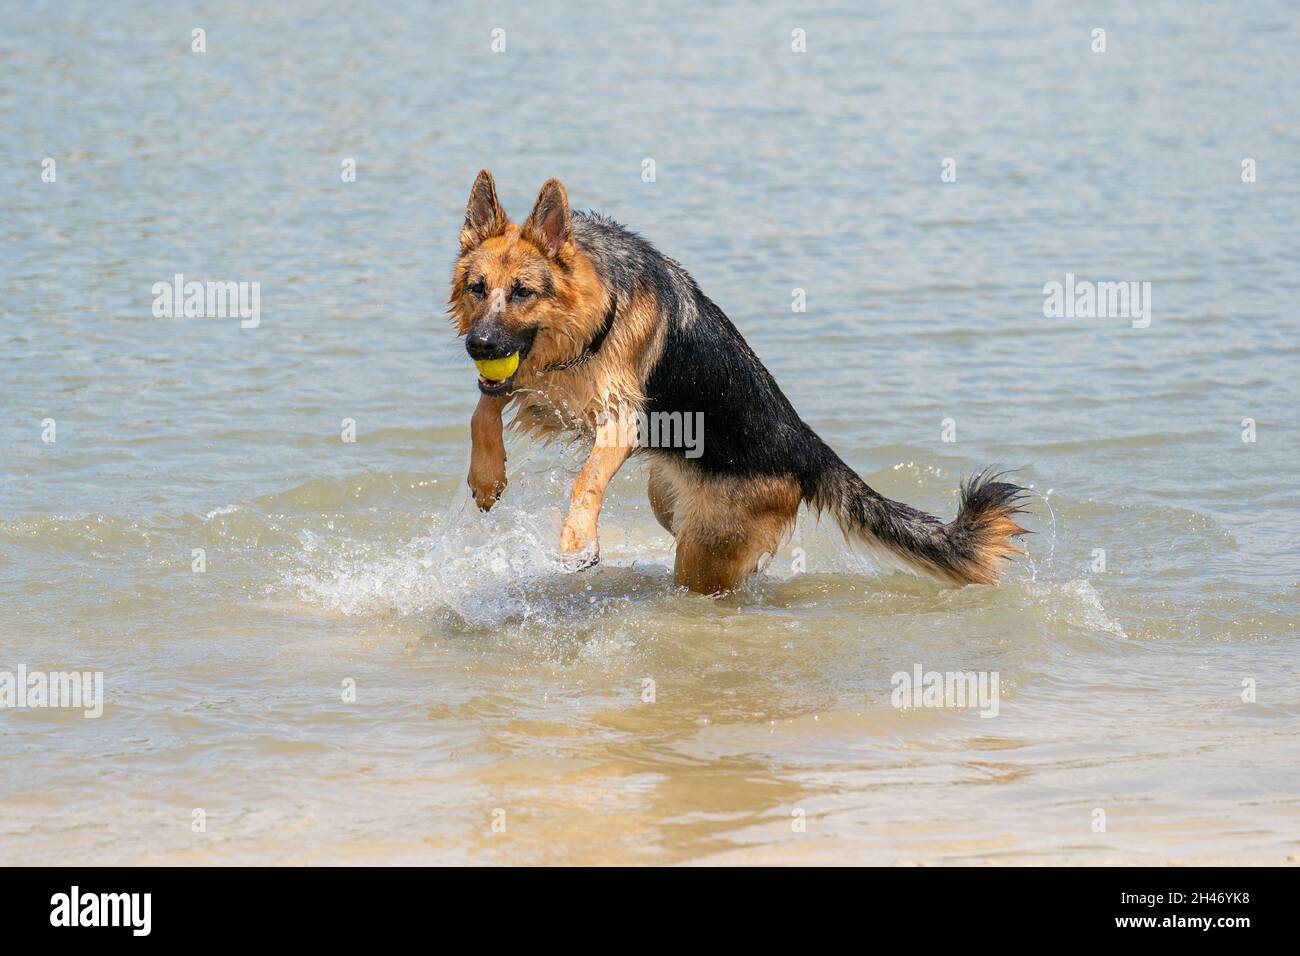 Giovane buon Pastore tedesco, salta in acqua con un grande spruzzi. Il cane schizza e salta felicemente nel lago. Palla da tennis gialla in bocca. Foto Stock